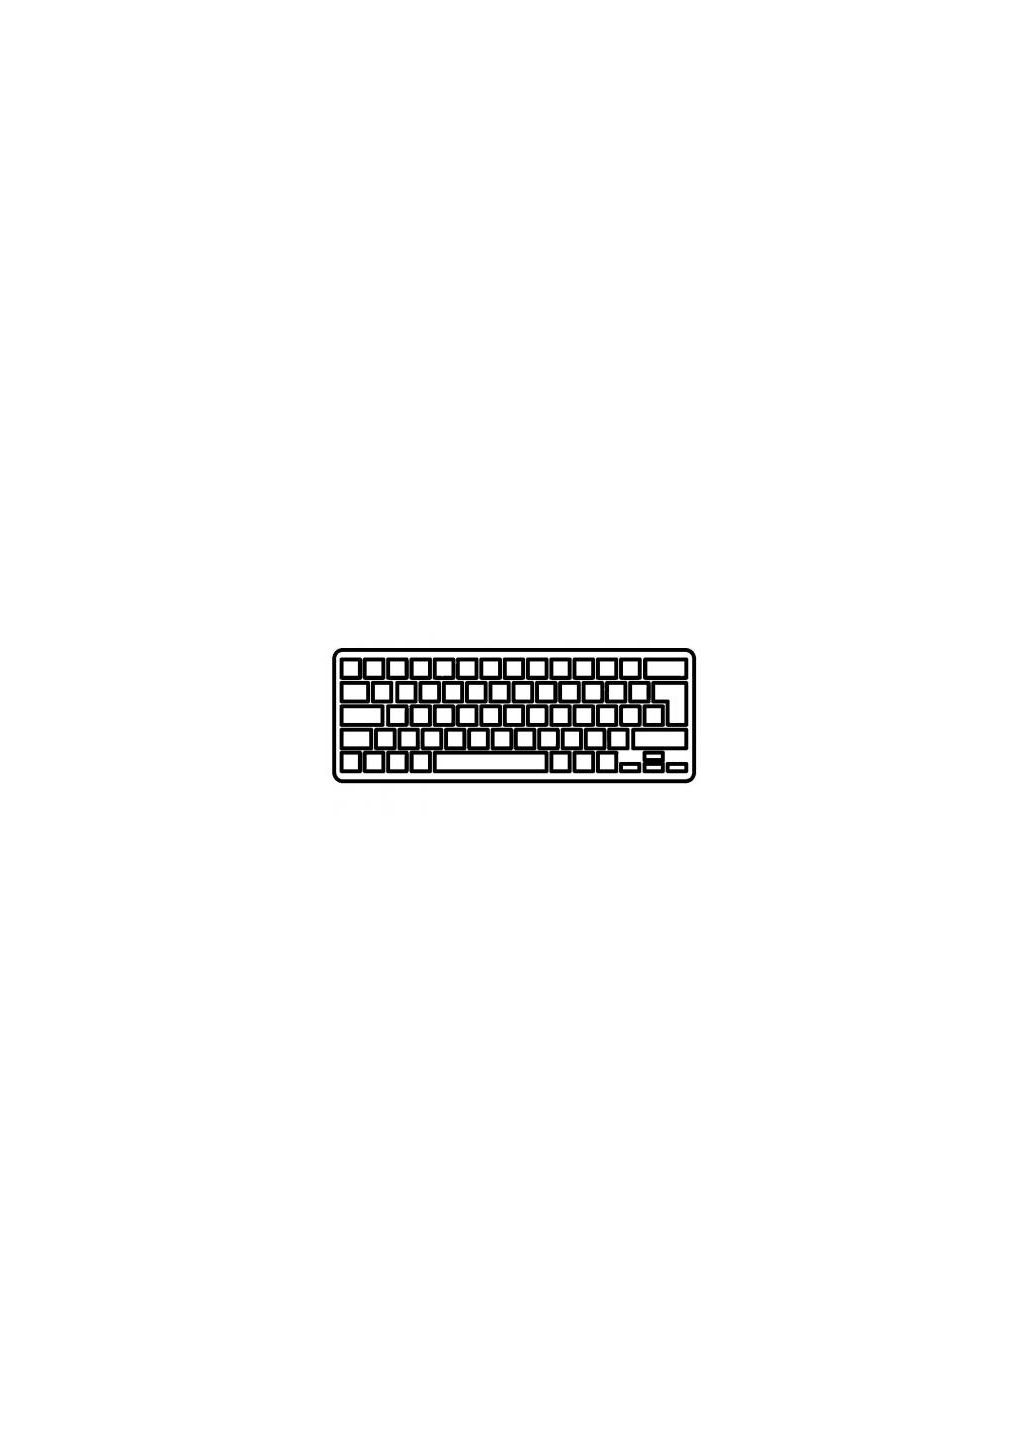 Клавиатура ноутбука Envy 173000/17t-3200 Series черная без рамки с подсветкой U (A43779) HP envy 17-3000/17t-3200 series черная без рамки с по (276706744)